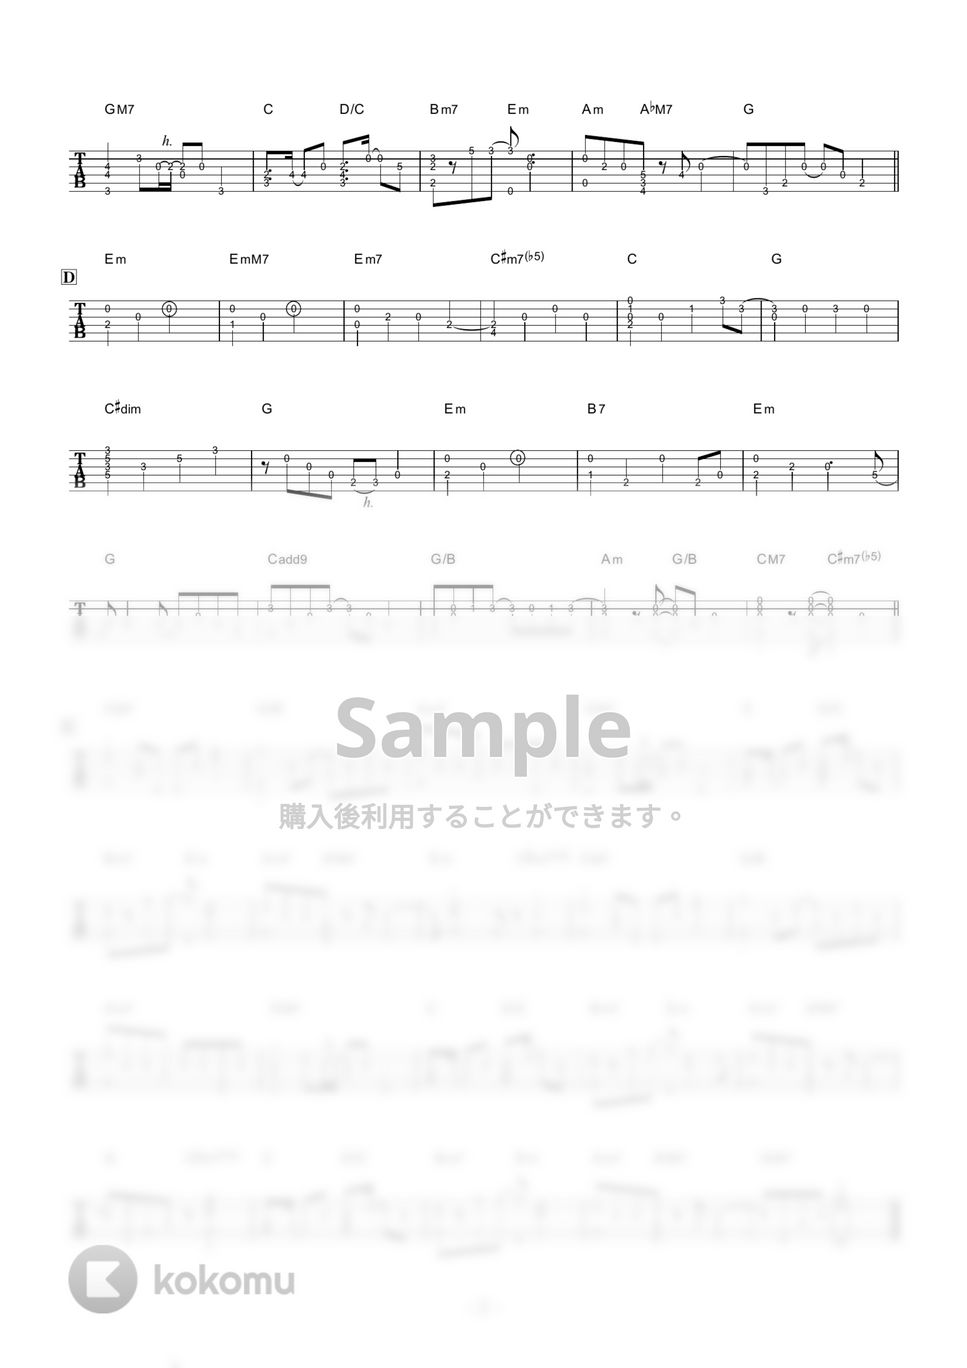 椎名林檎 - あおぞら (ソロギター) by 伴奏屋TAB譜